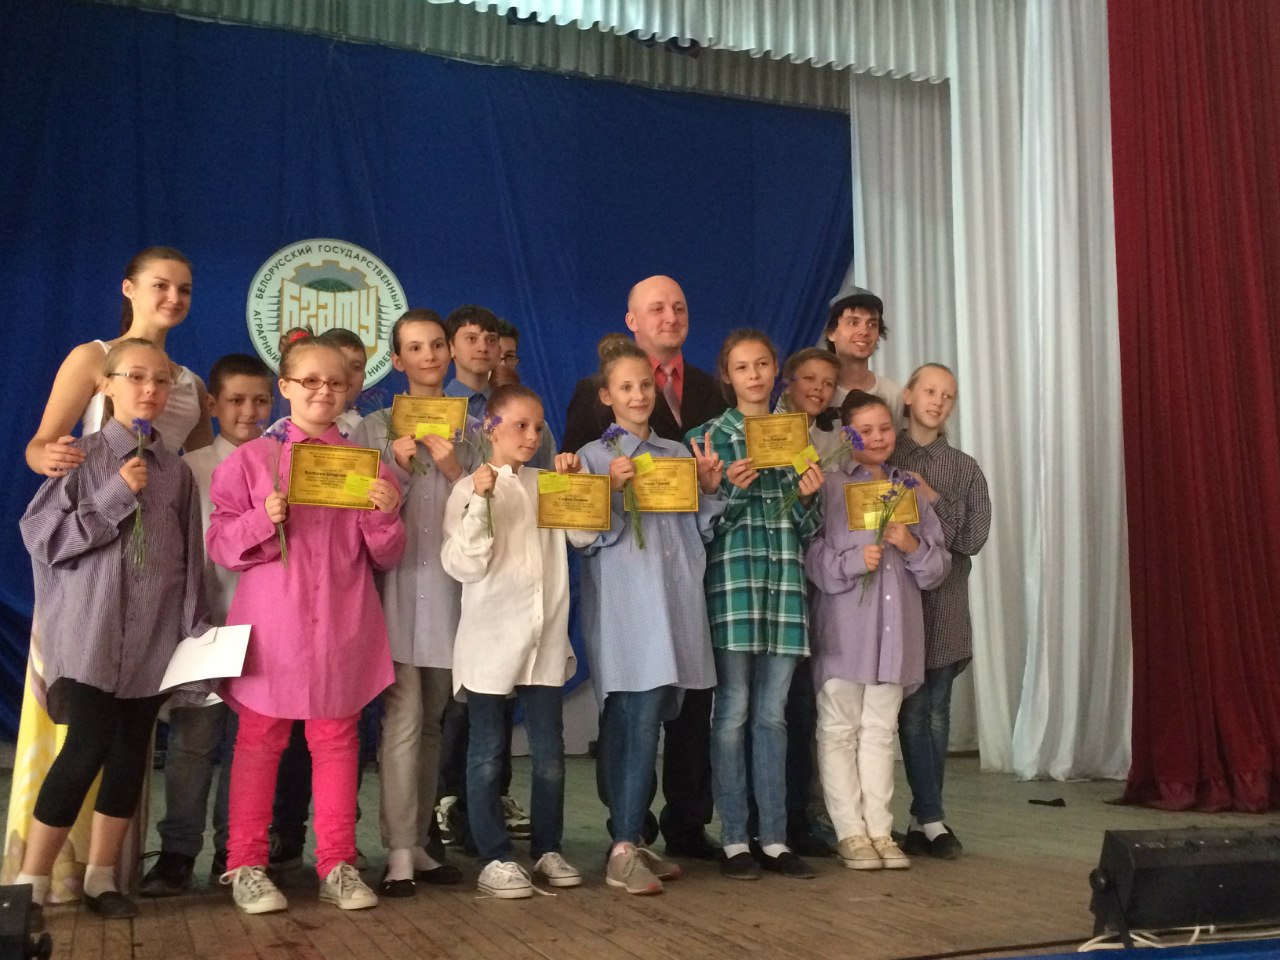 Городской детский лагерь актёрского мастерства «Acting Camp» Минской школы киноискусства (Минск, Беларусь)